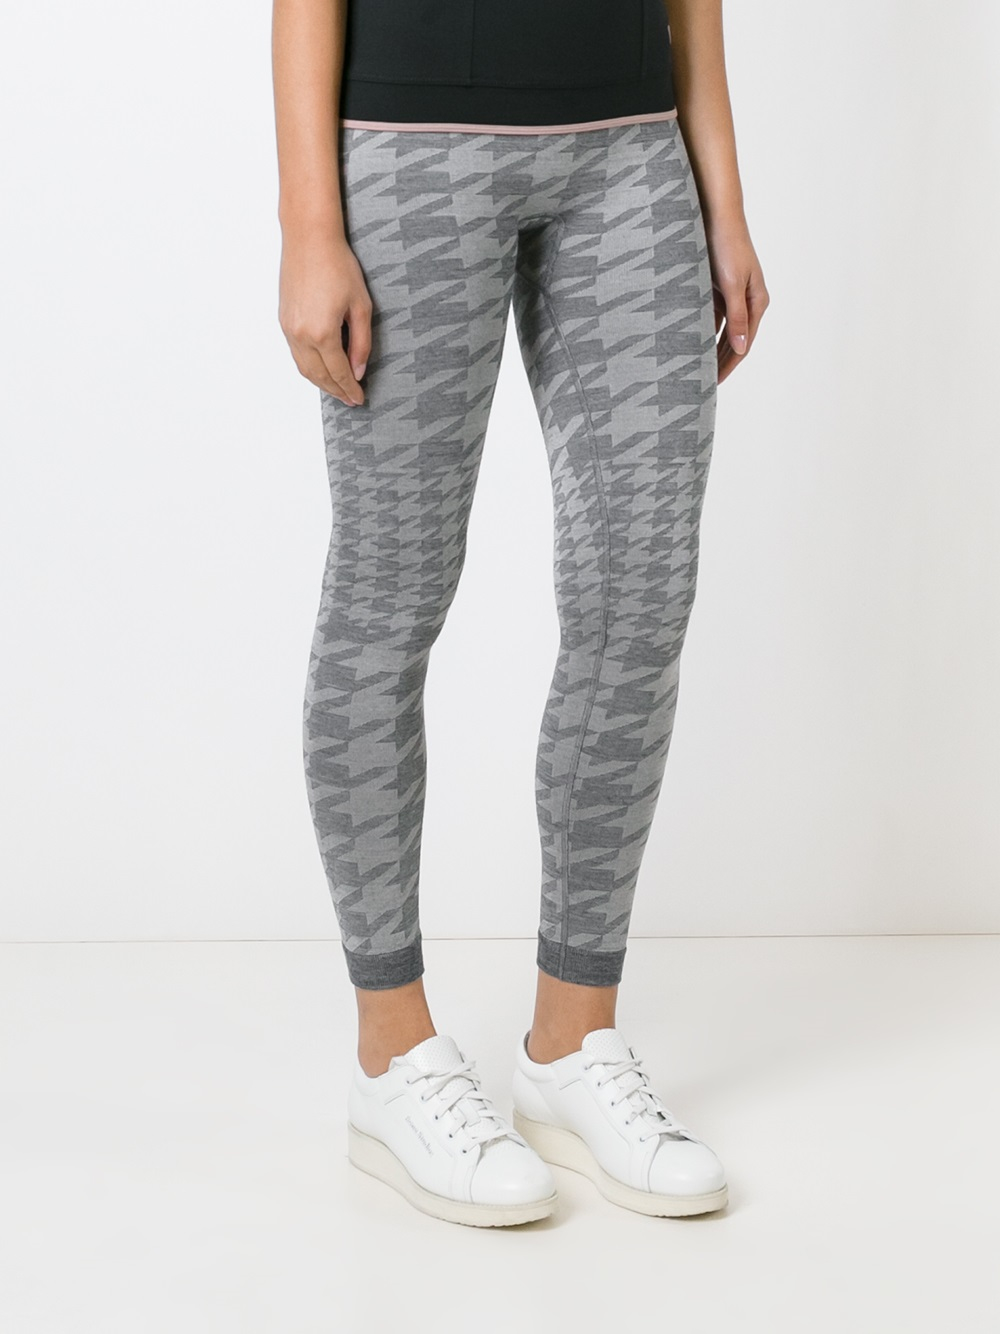 Lyst - Adidas By Stella Mccartney Dark Grey Pants in Gray